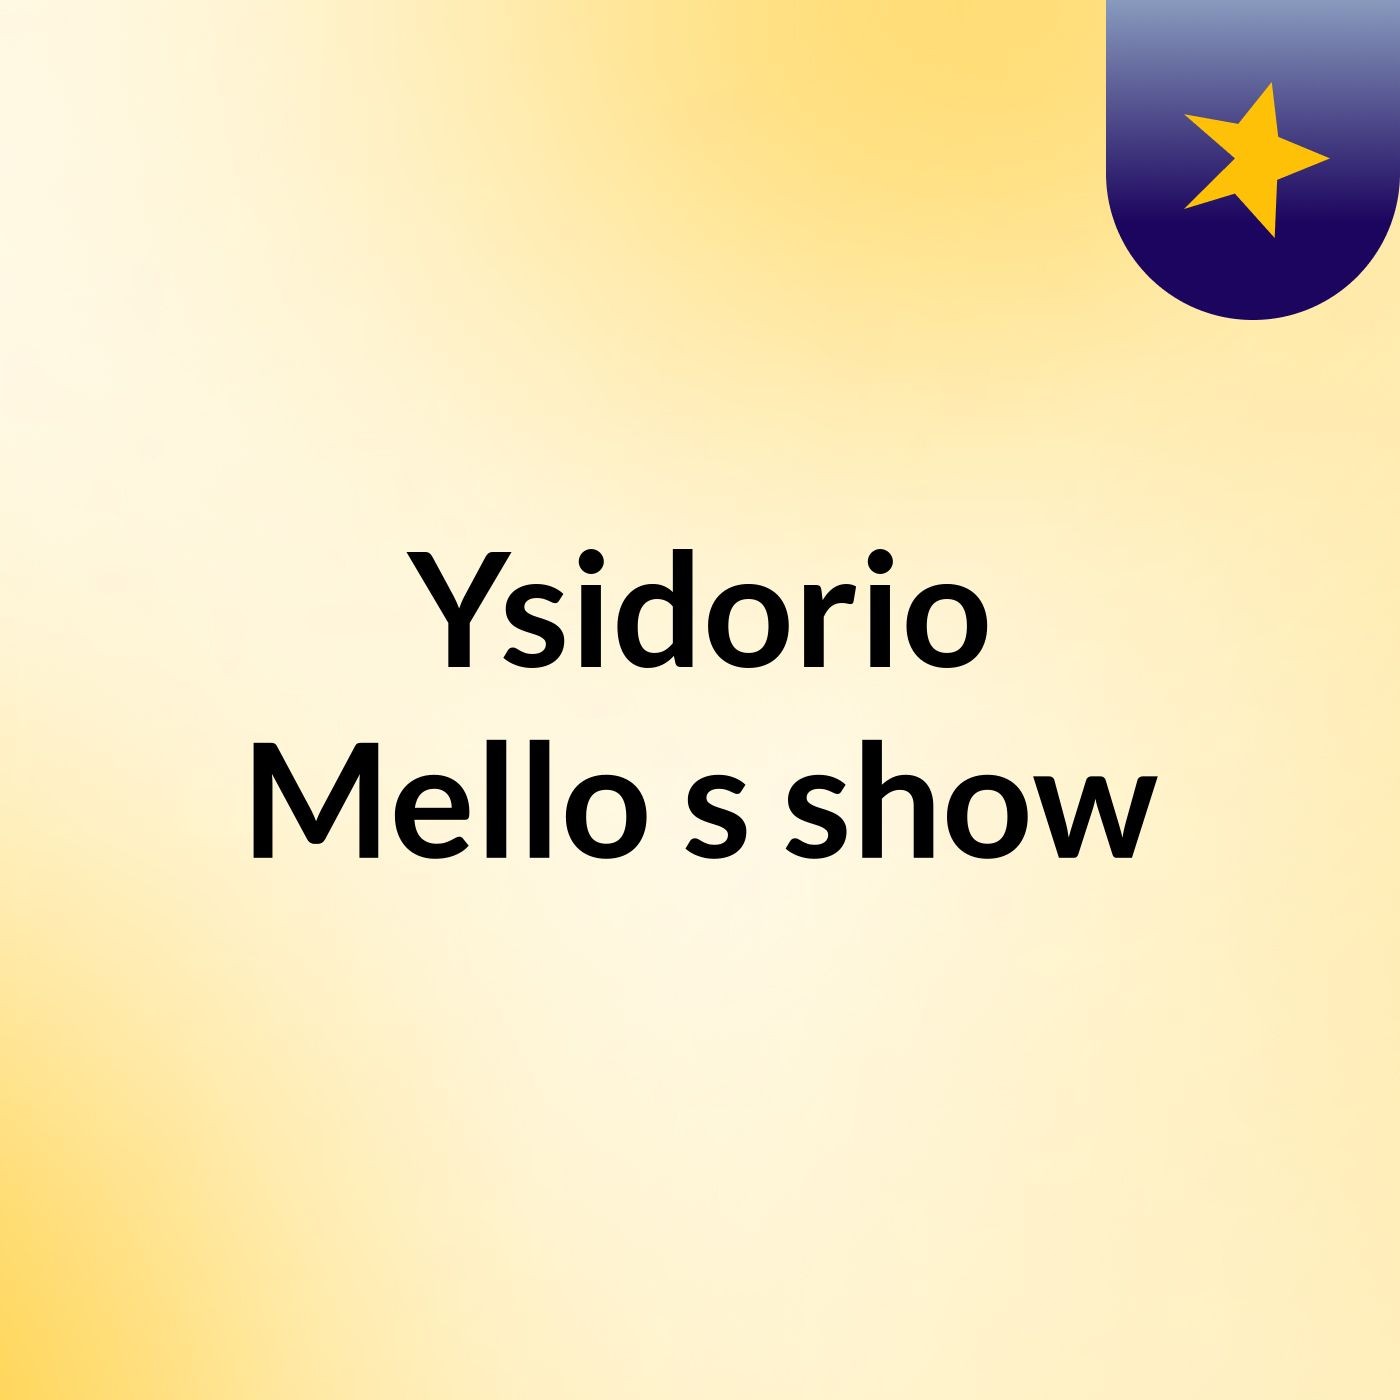 Ysidorio Mello's show